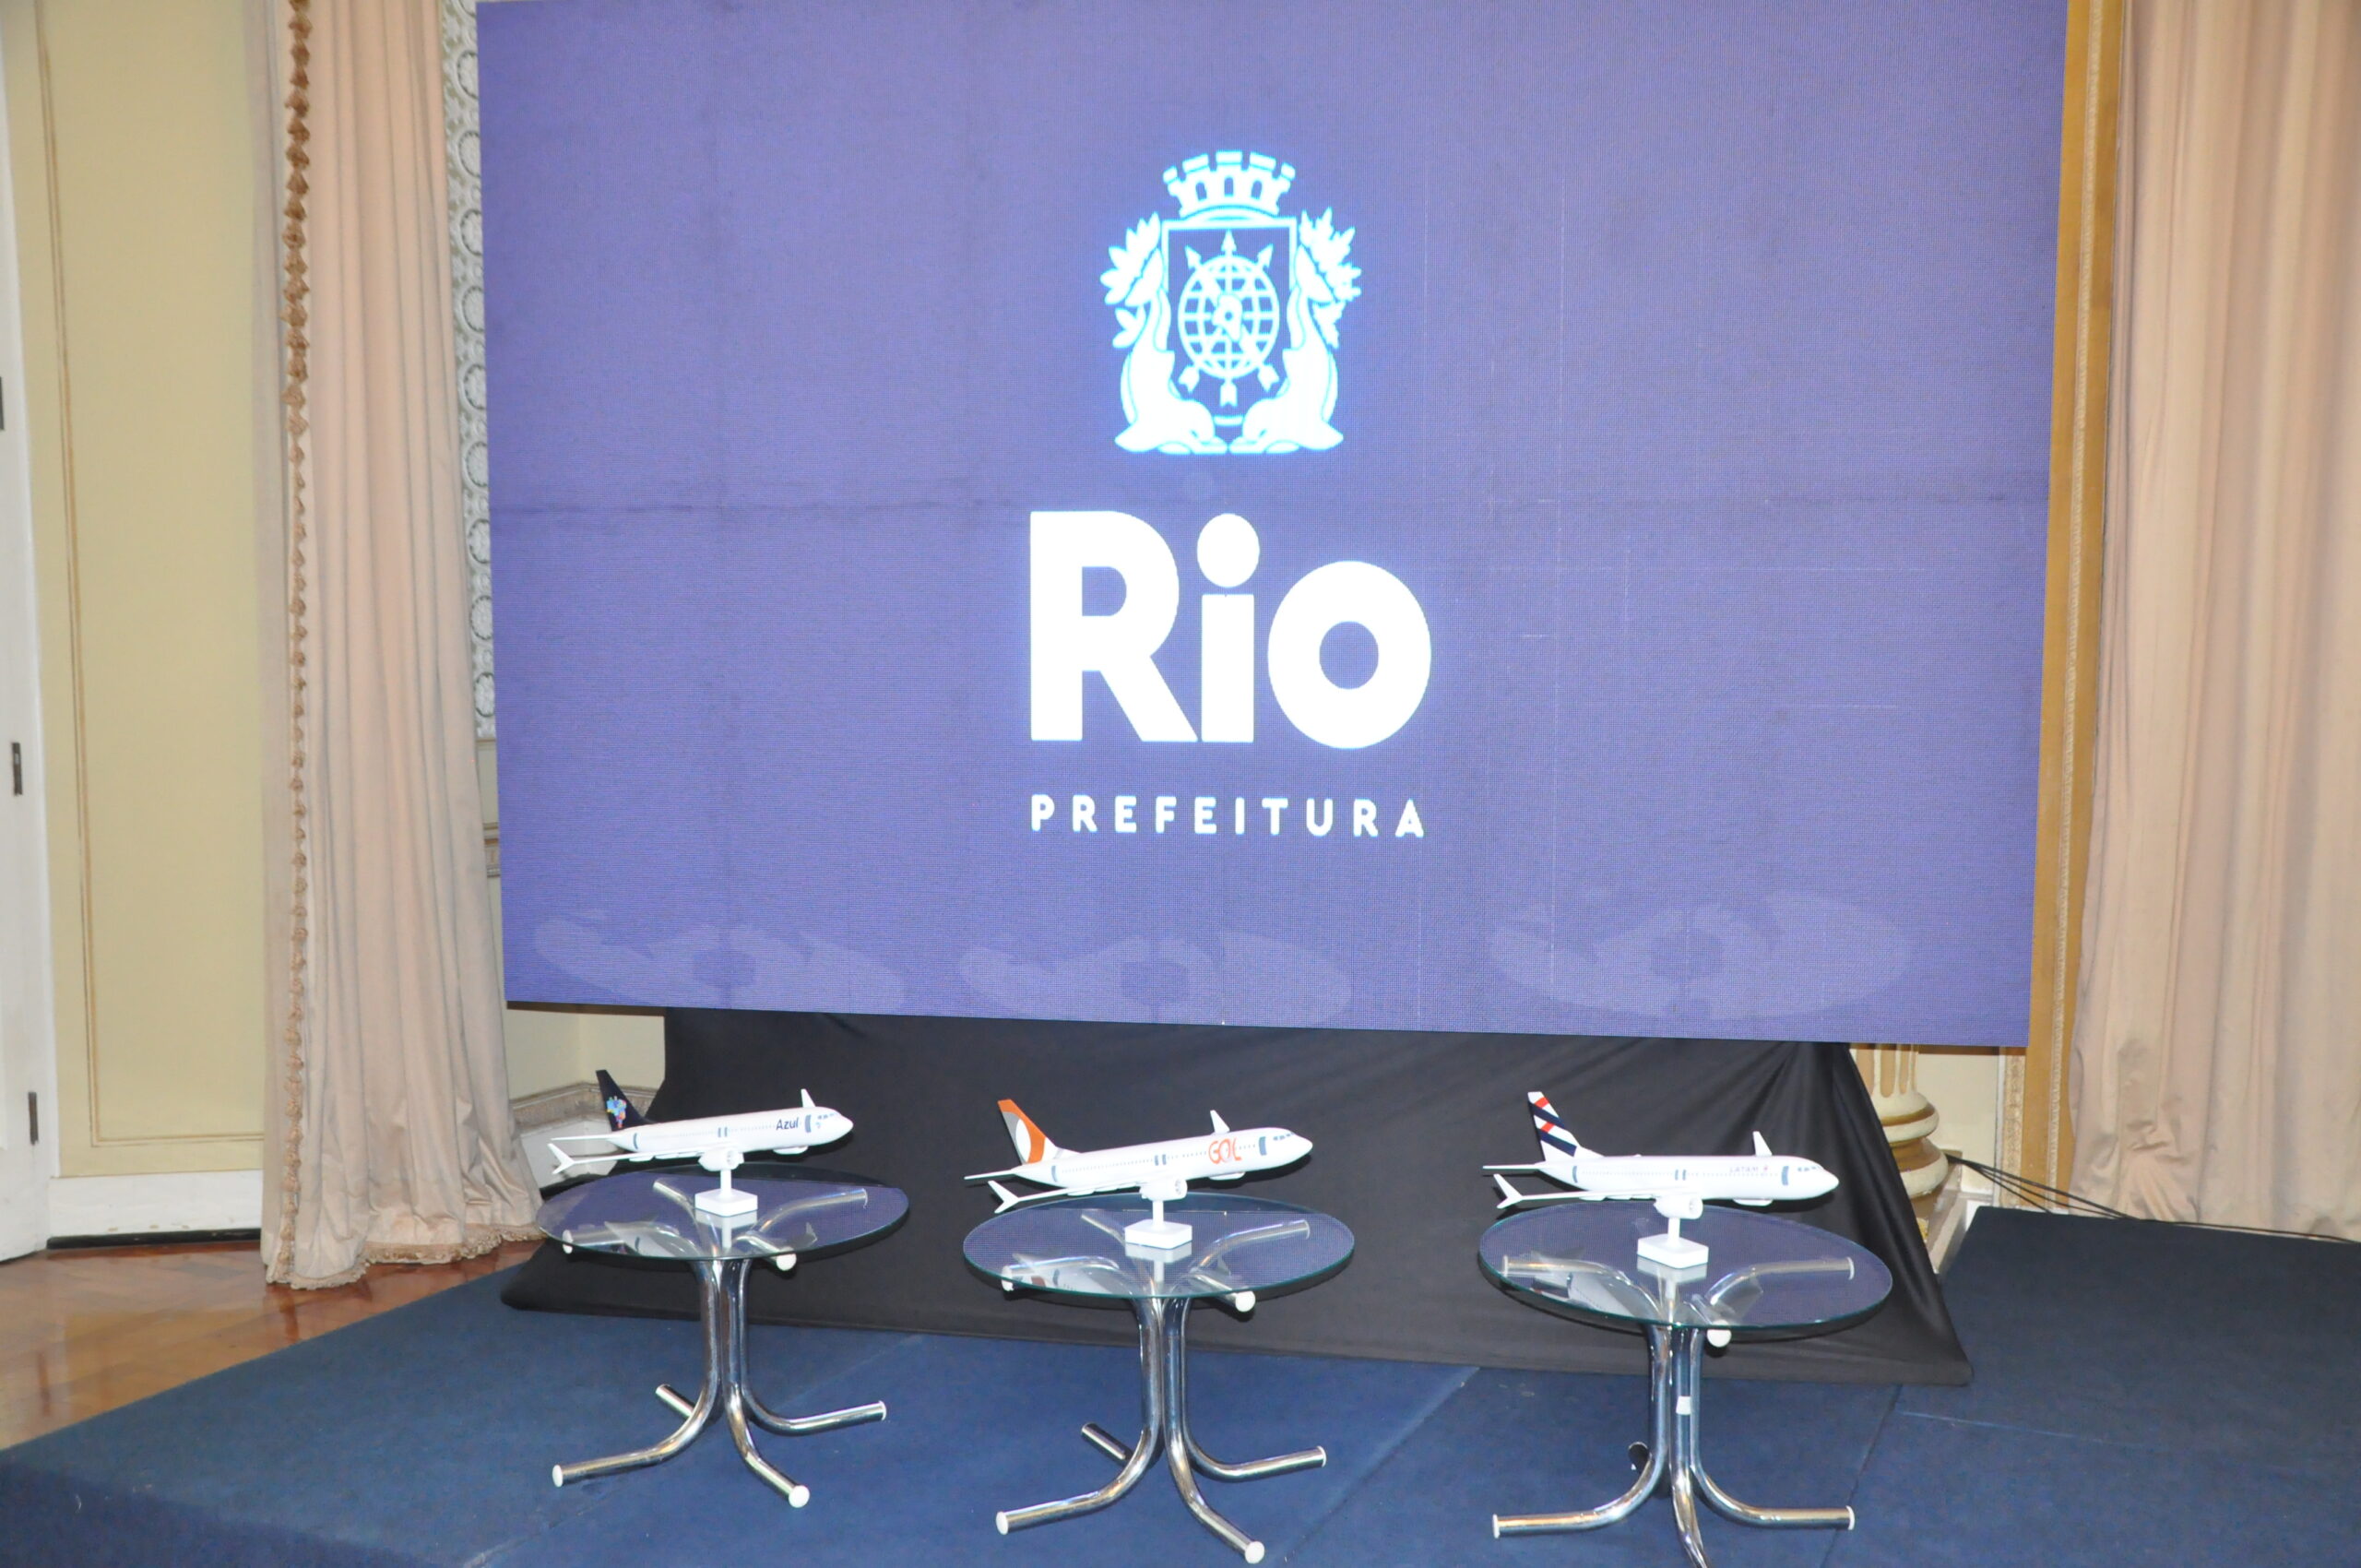 Prefeitura do Rio e as três companhias aéreas